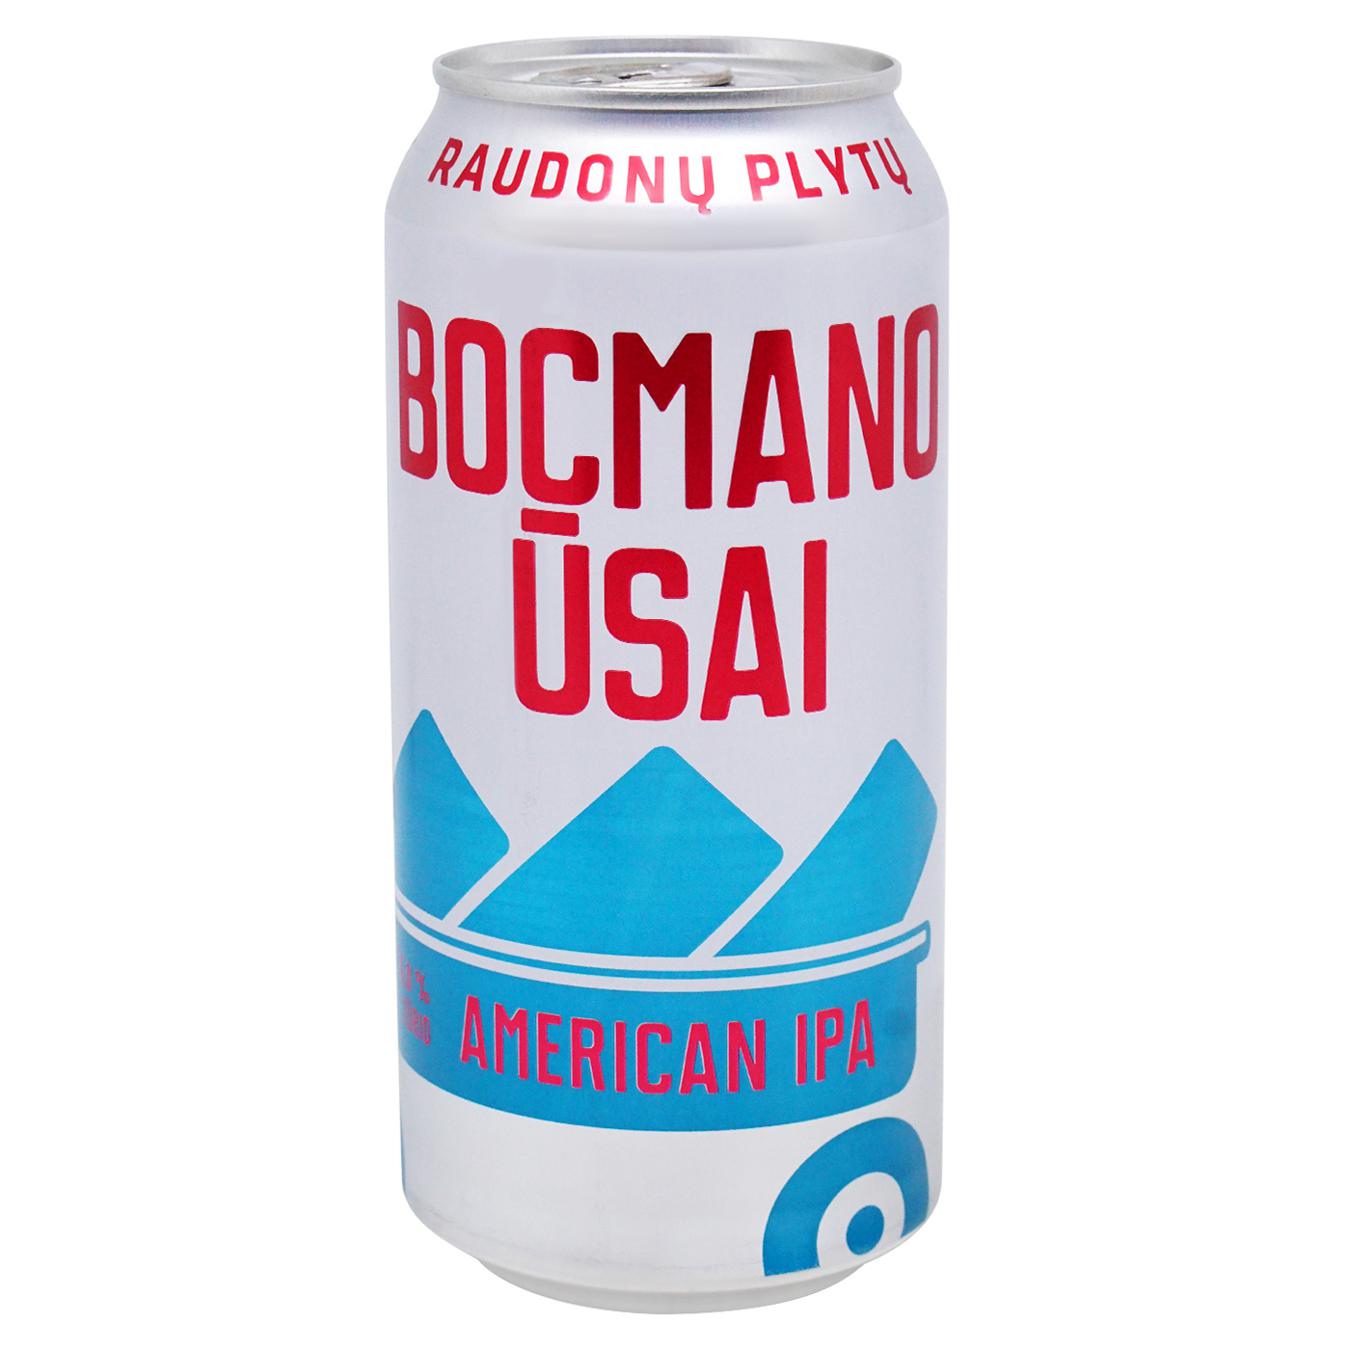 Пиво світле Raudonos plytos Bocmano ūsai 6% 0,44л залізна банка